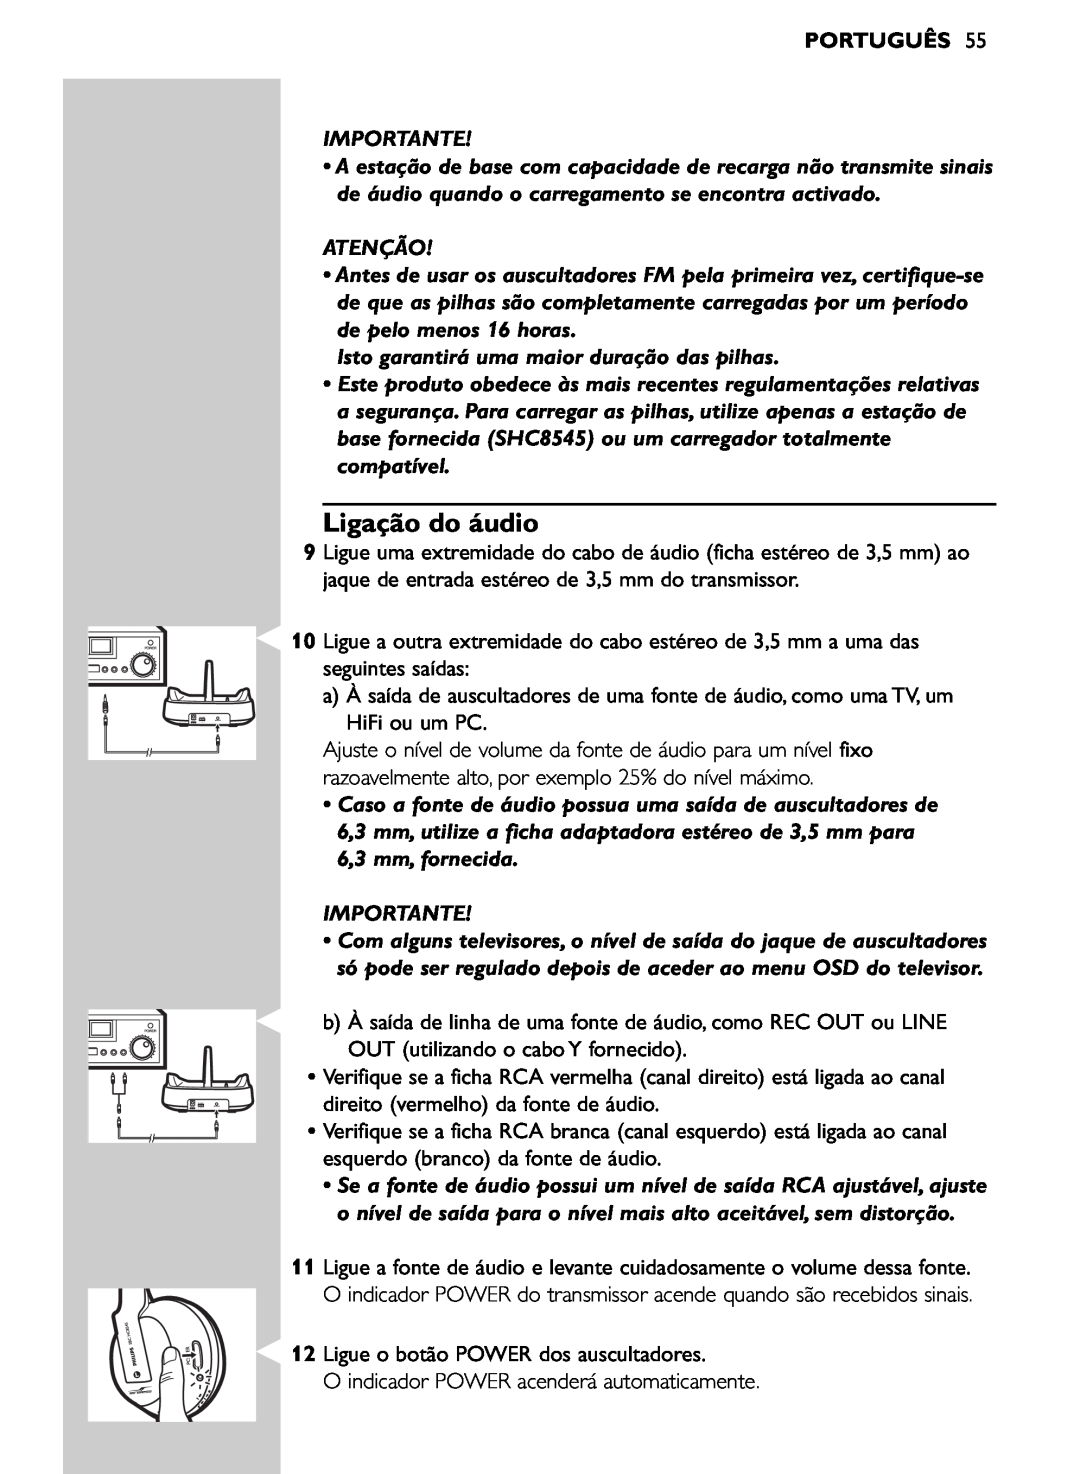 Philips SHC8545/00 manual Ligação do áudio, Português, Importante, Atenção, Isto garantirá uma maior duração das pilhas 